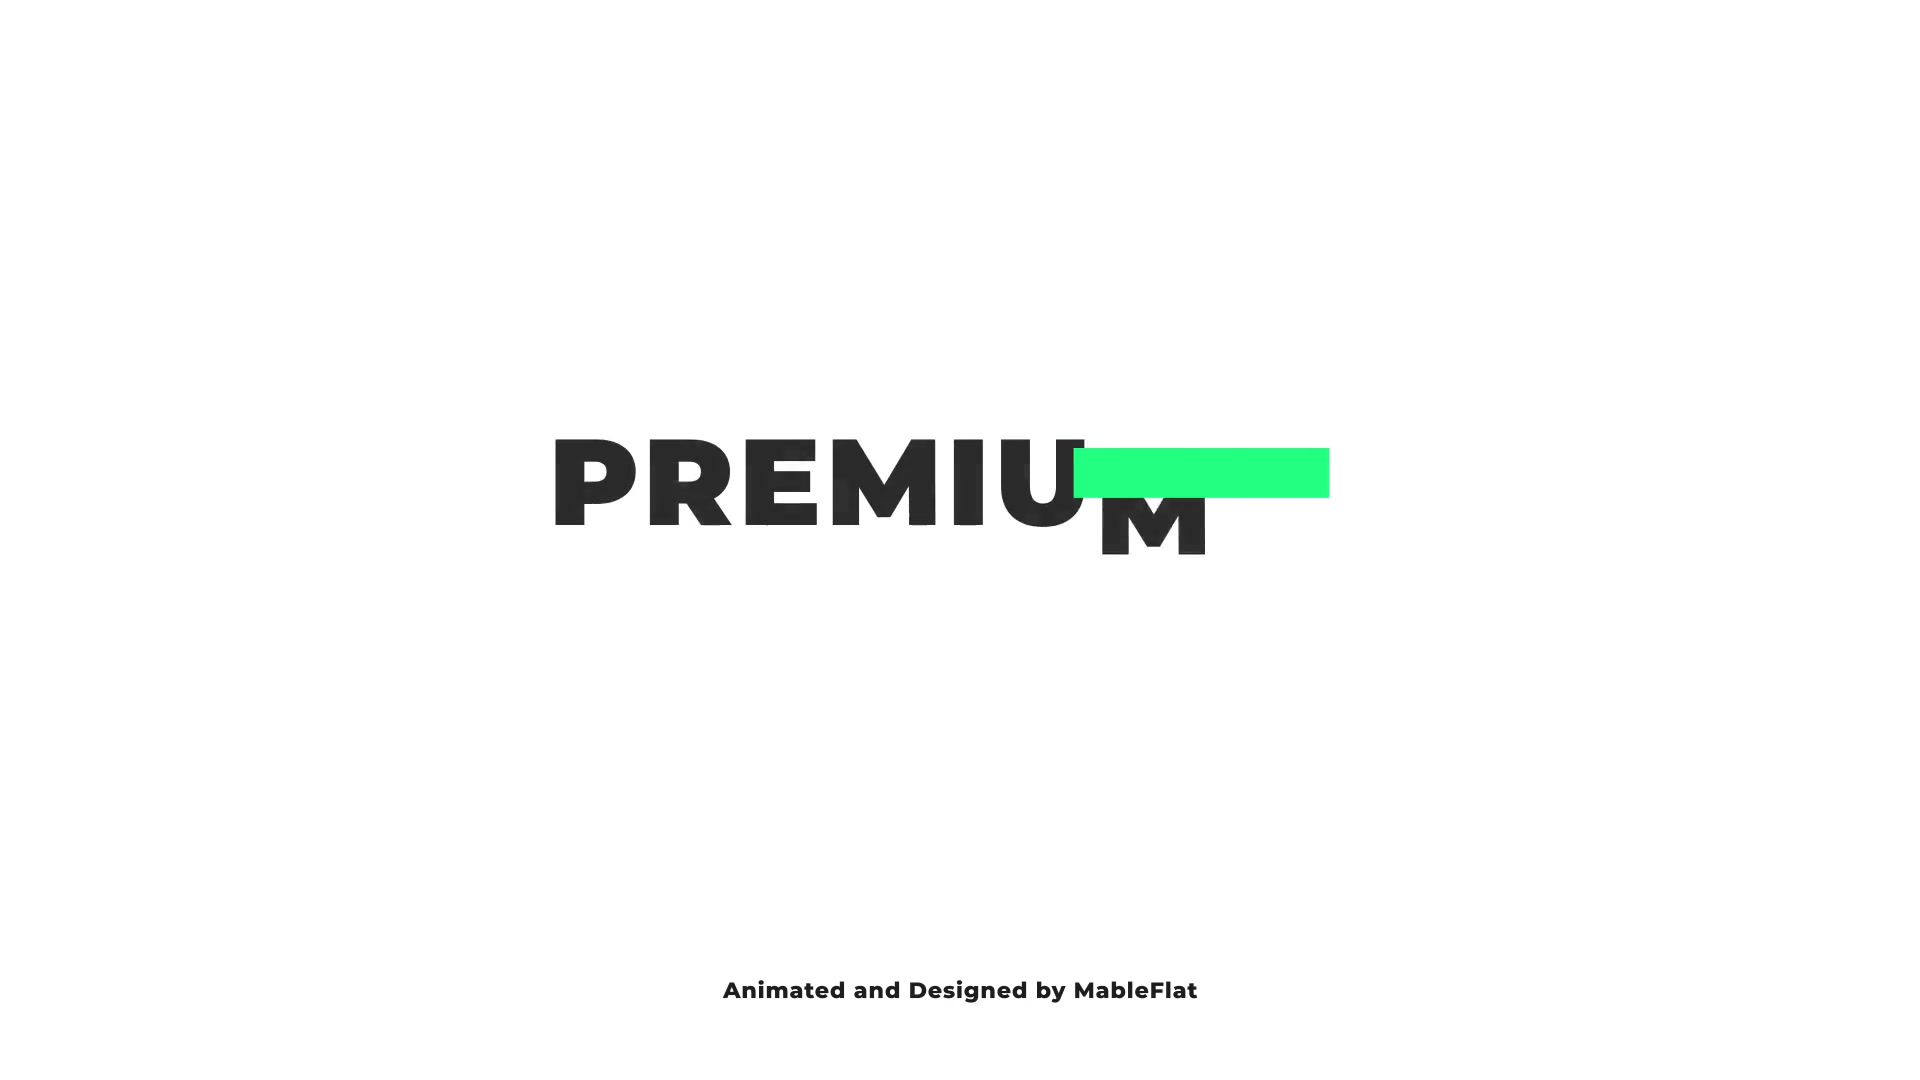 Premium Typography for Premiere Pro Videohive 23363891 Premiere Pro Image 11